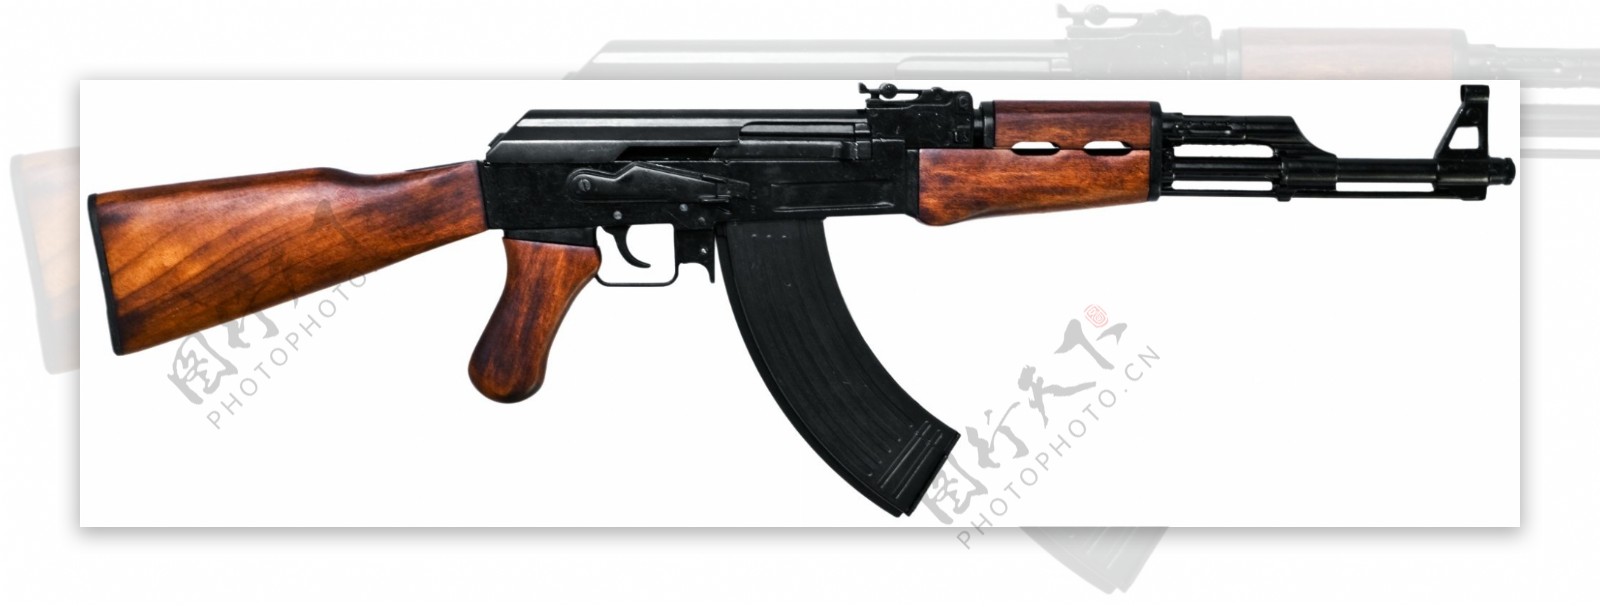 AK47突击步枪图片